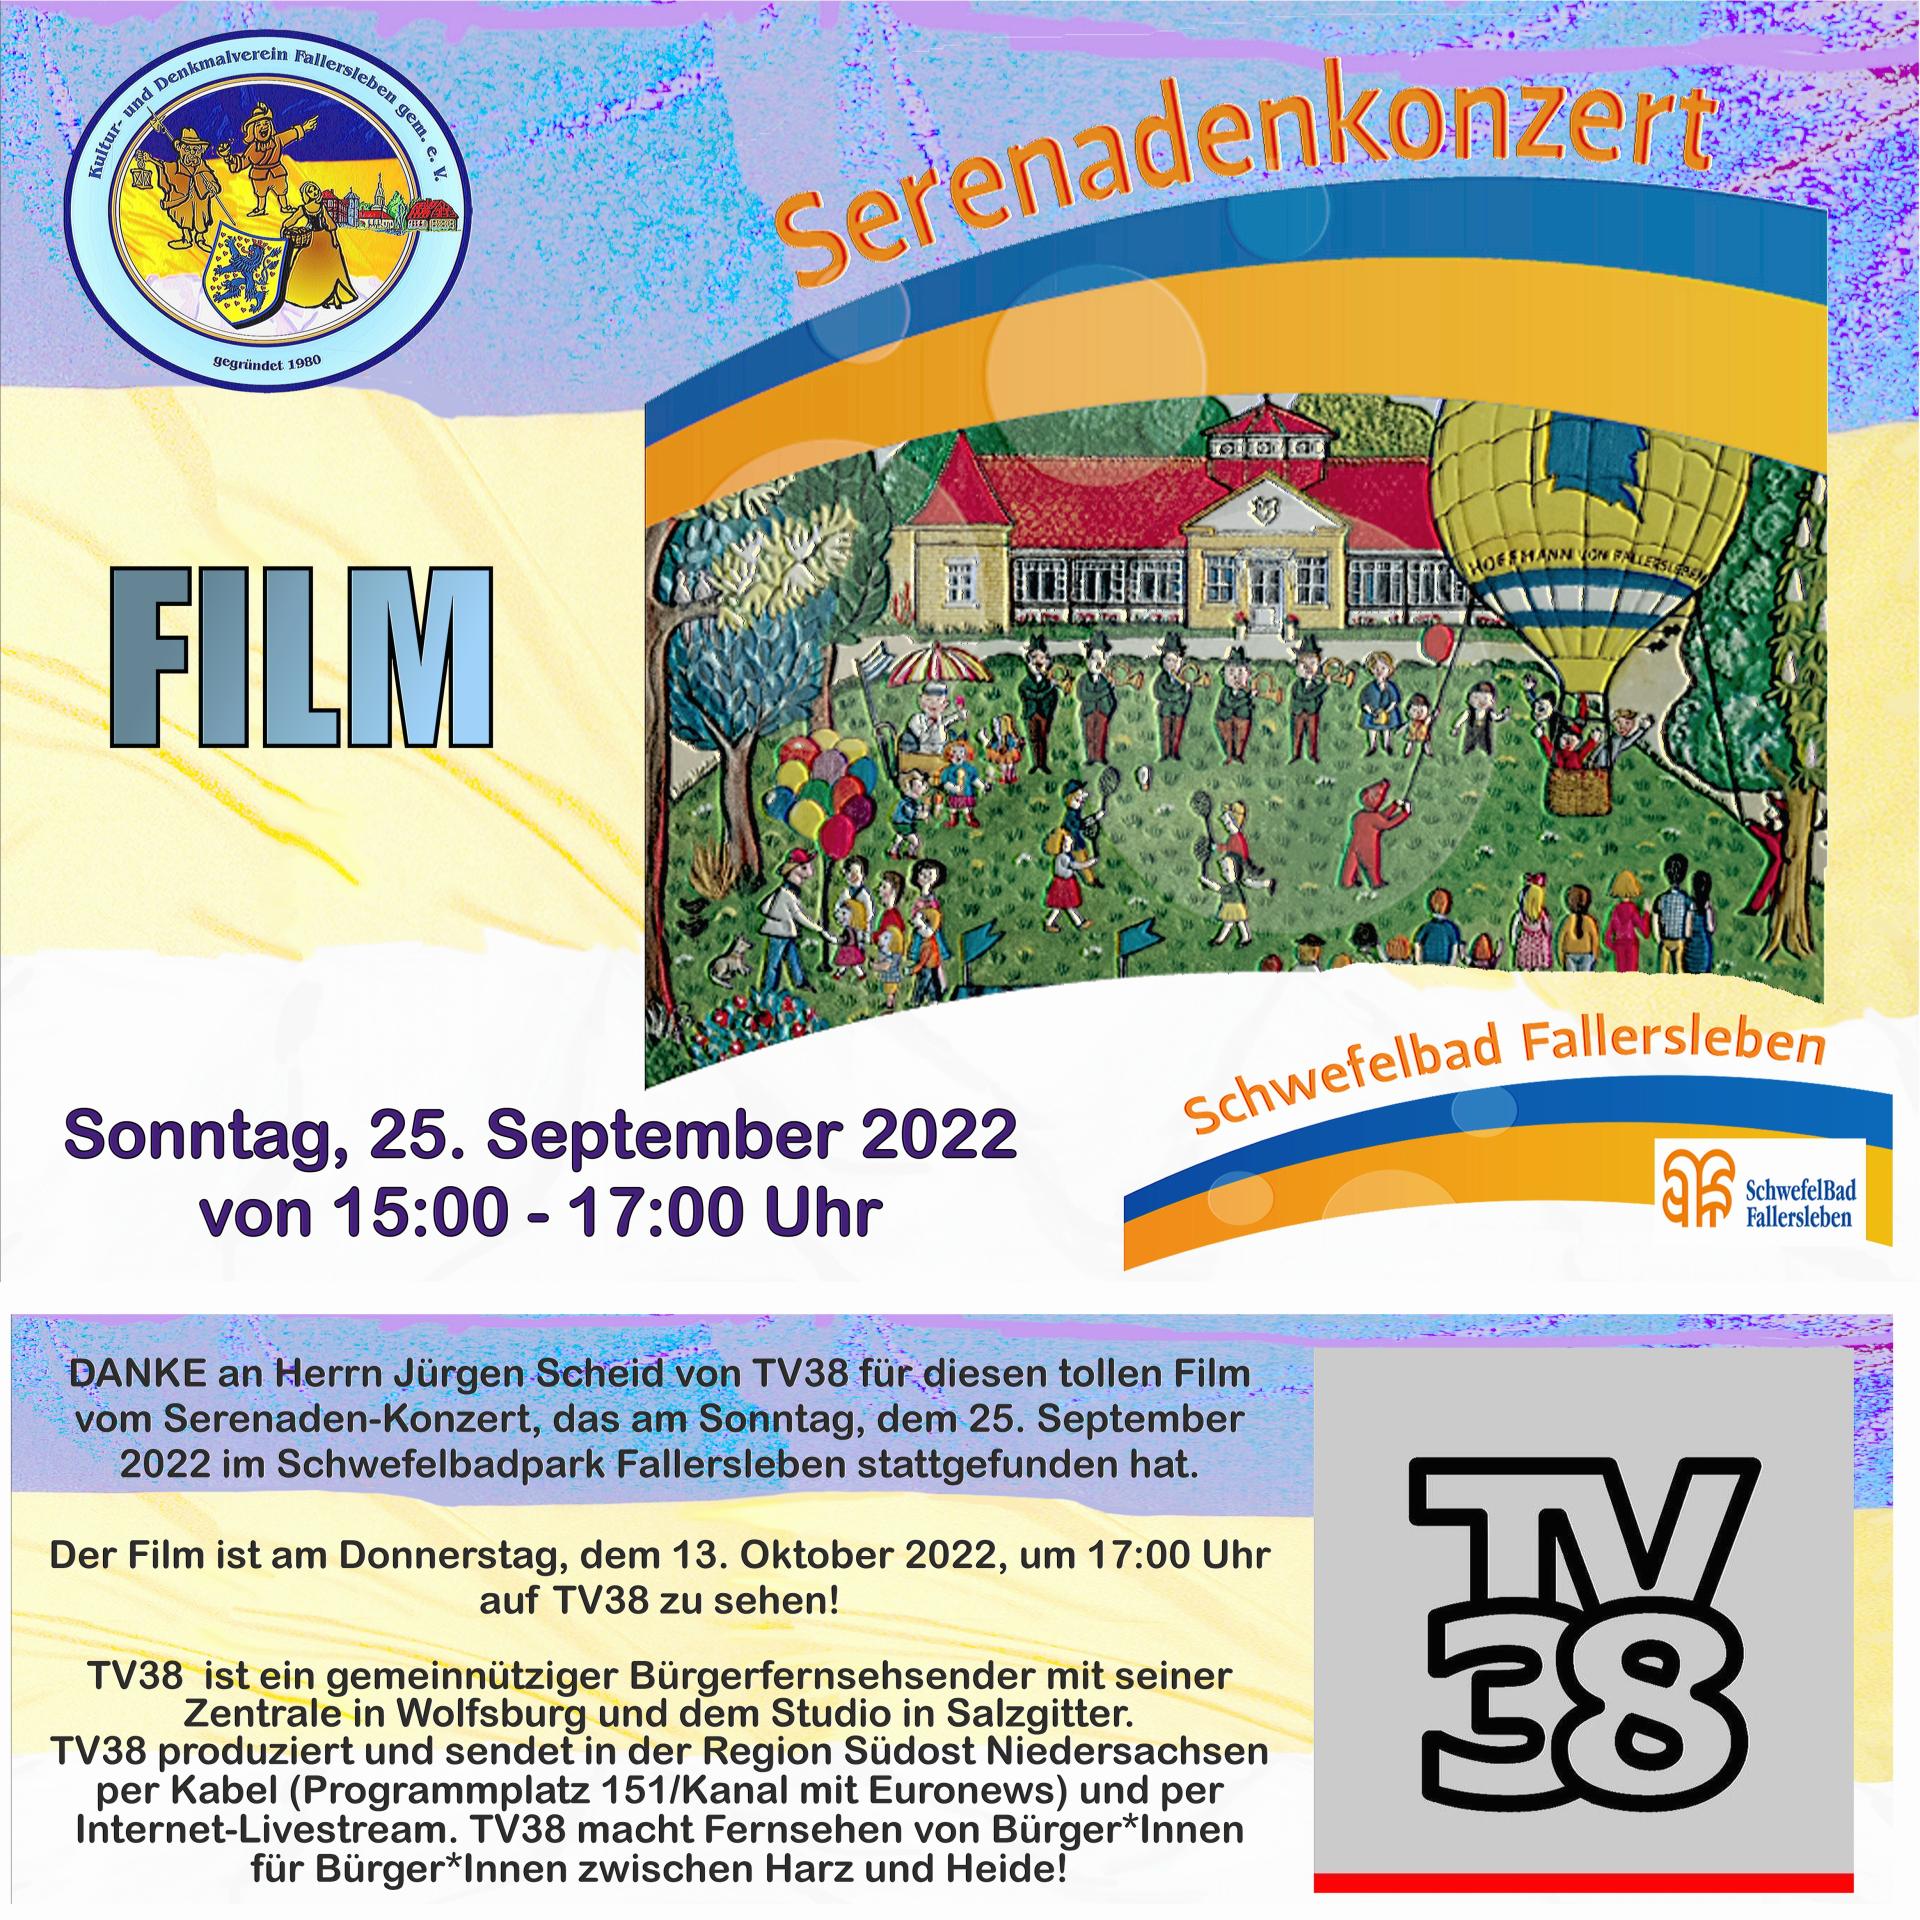 Film_Serenadenkonzert_TV38